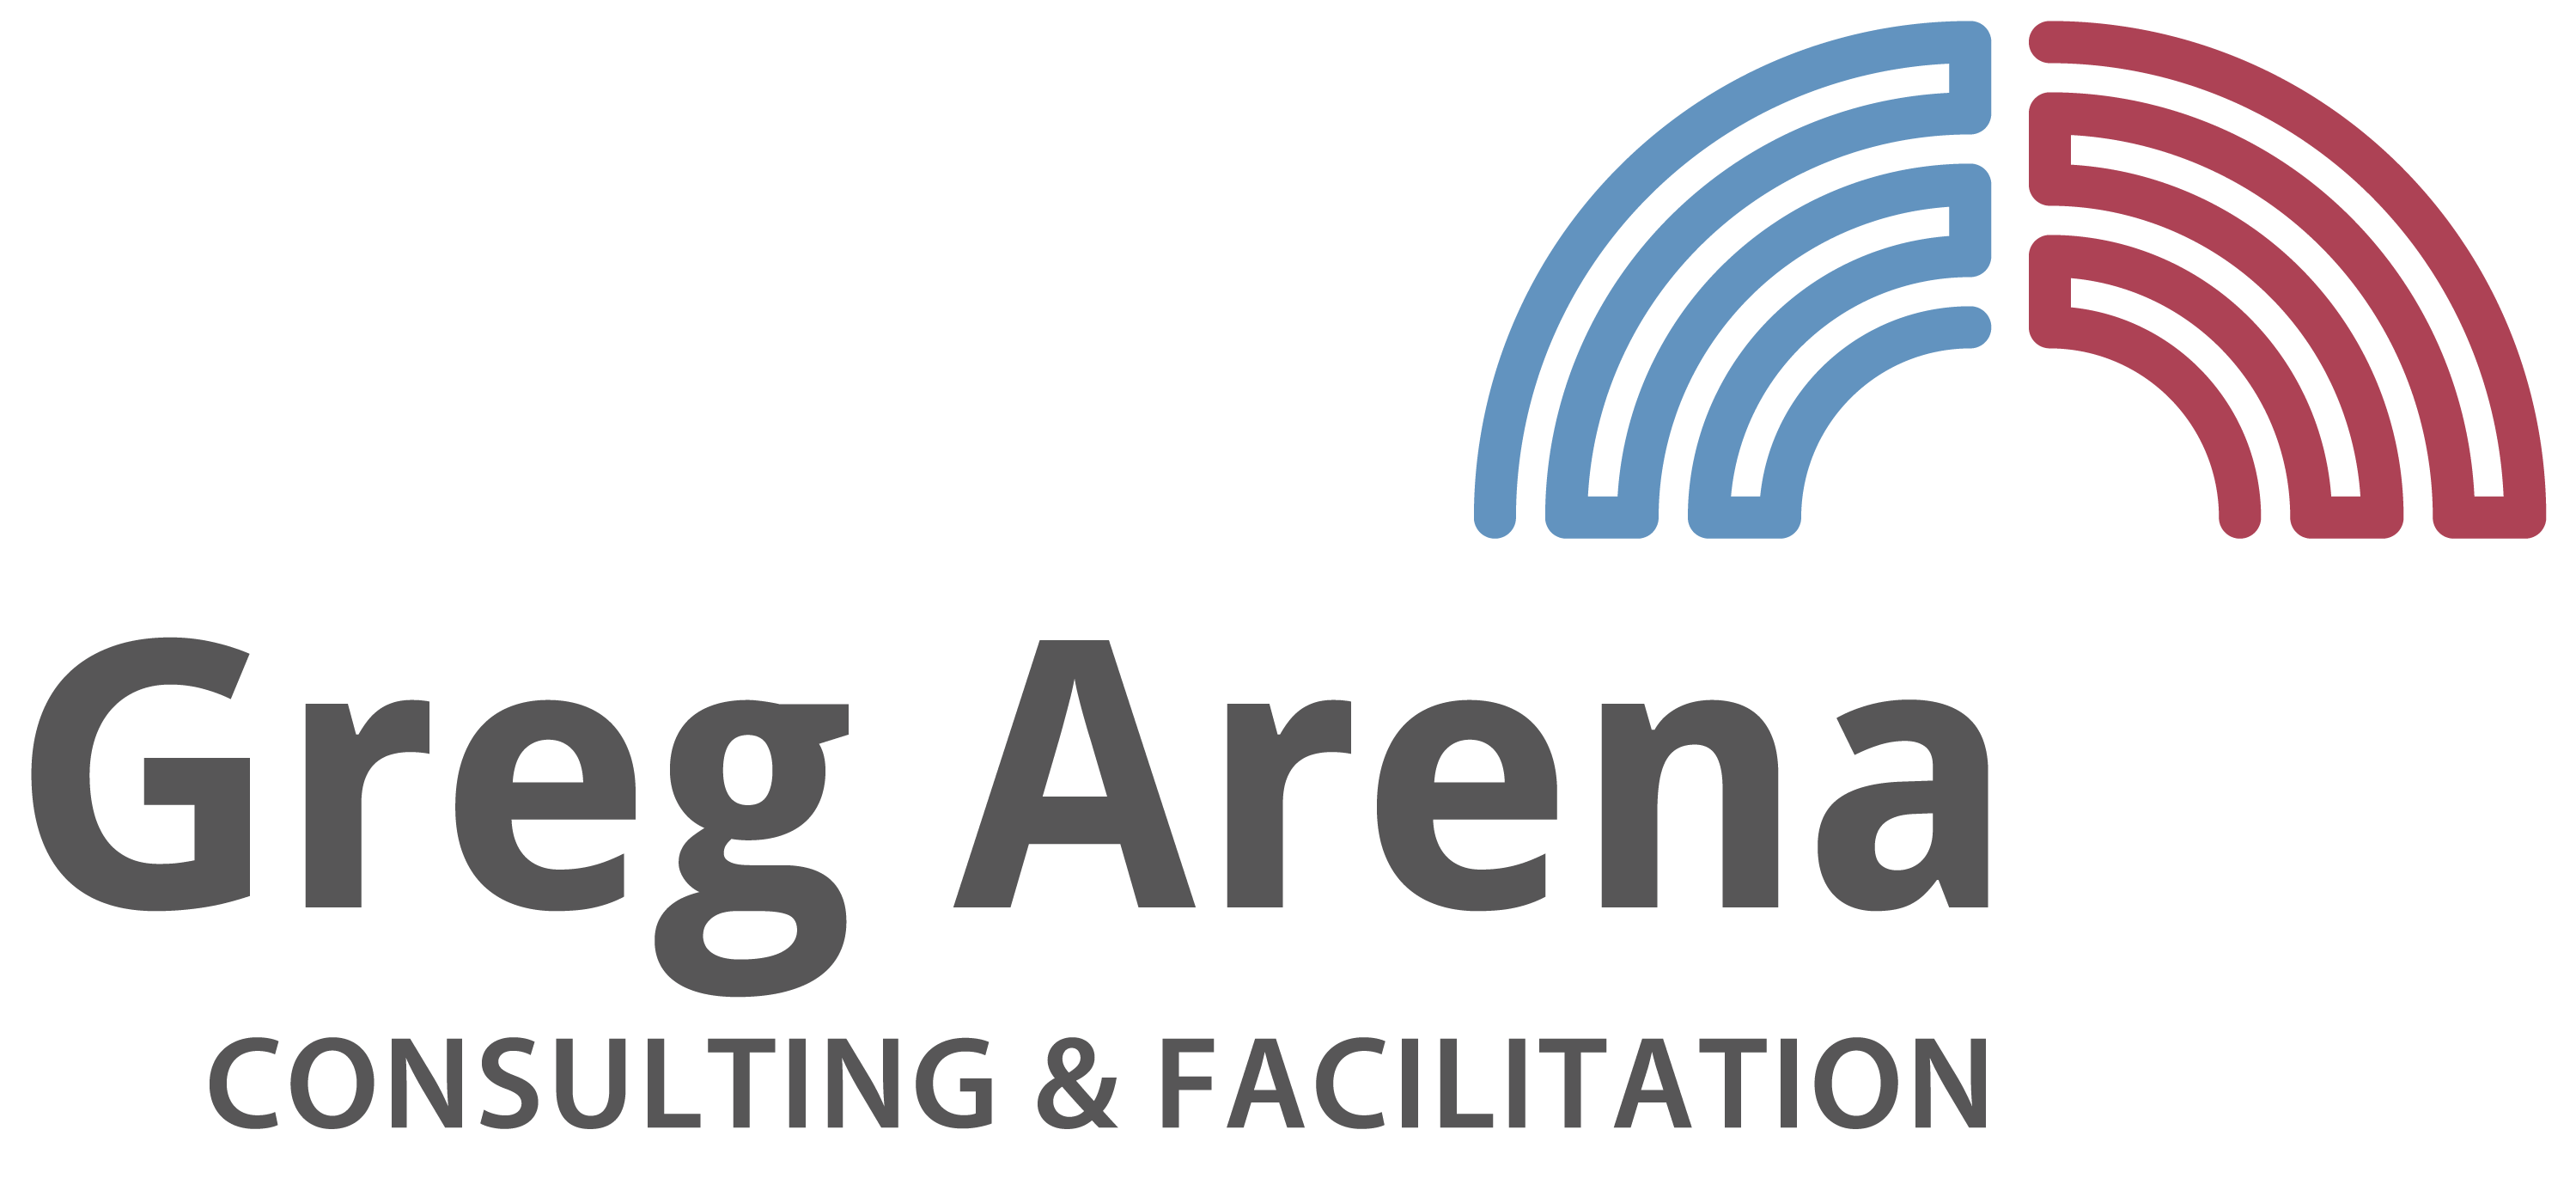 Greg Arenas Logo, das die Integration der beiden Gehirnhälften darstellt sowie den Schriftzug mit Greg Arenas Name und Tätigkeit, Coaching und Moderation.